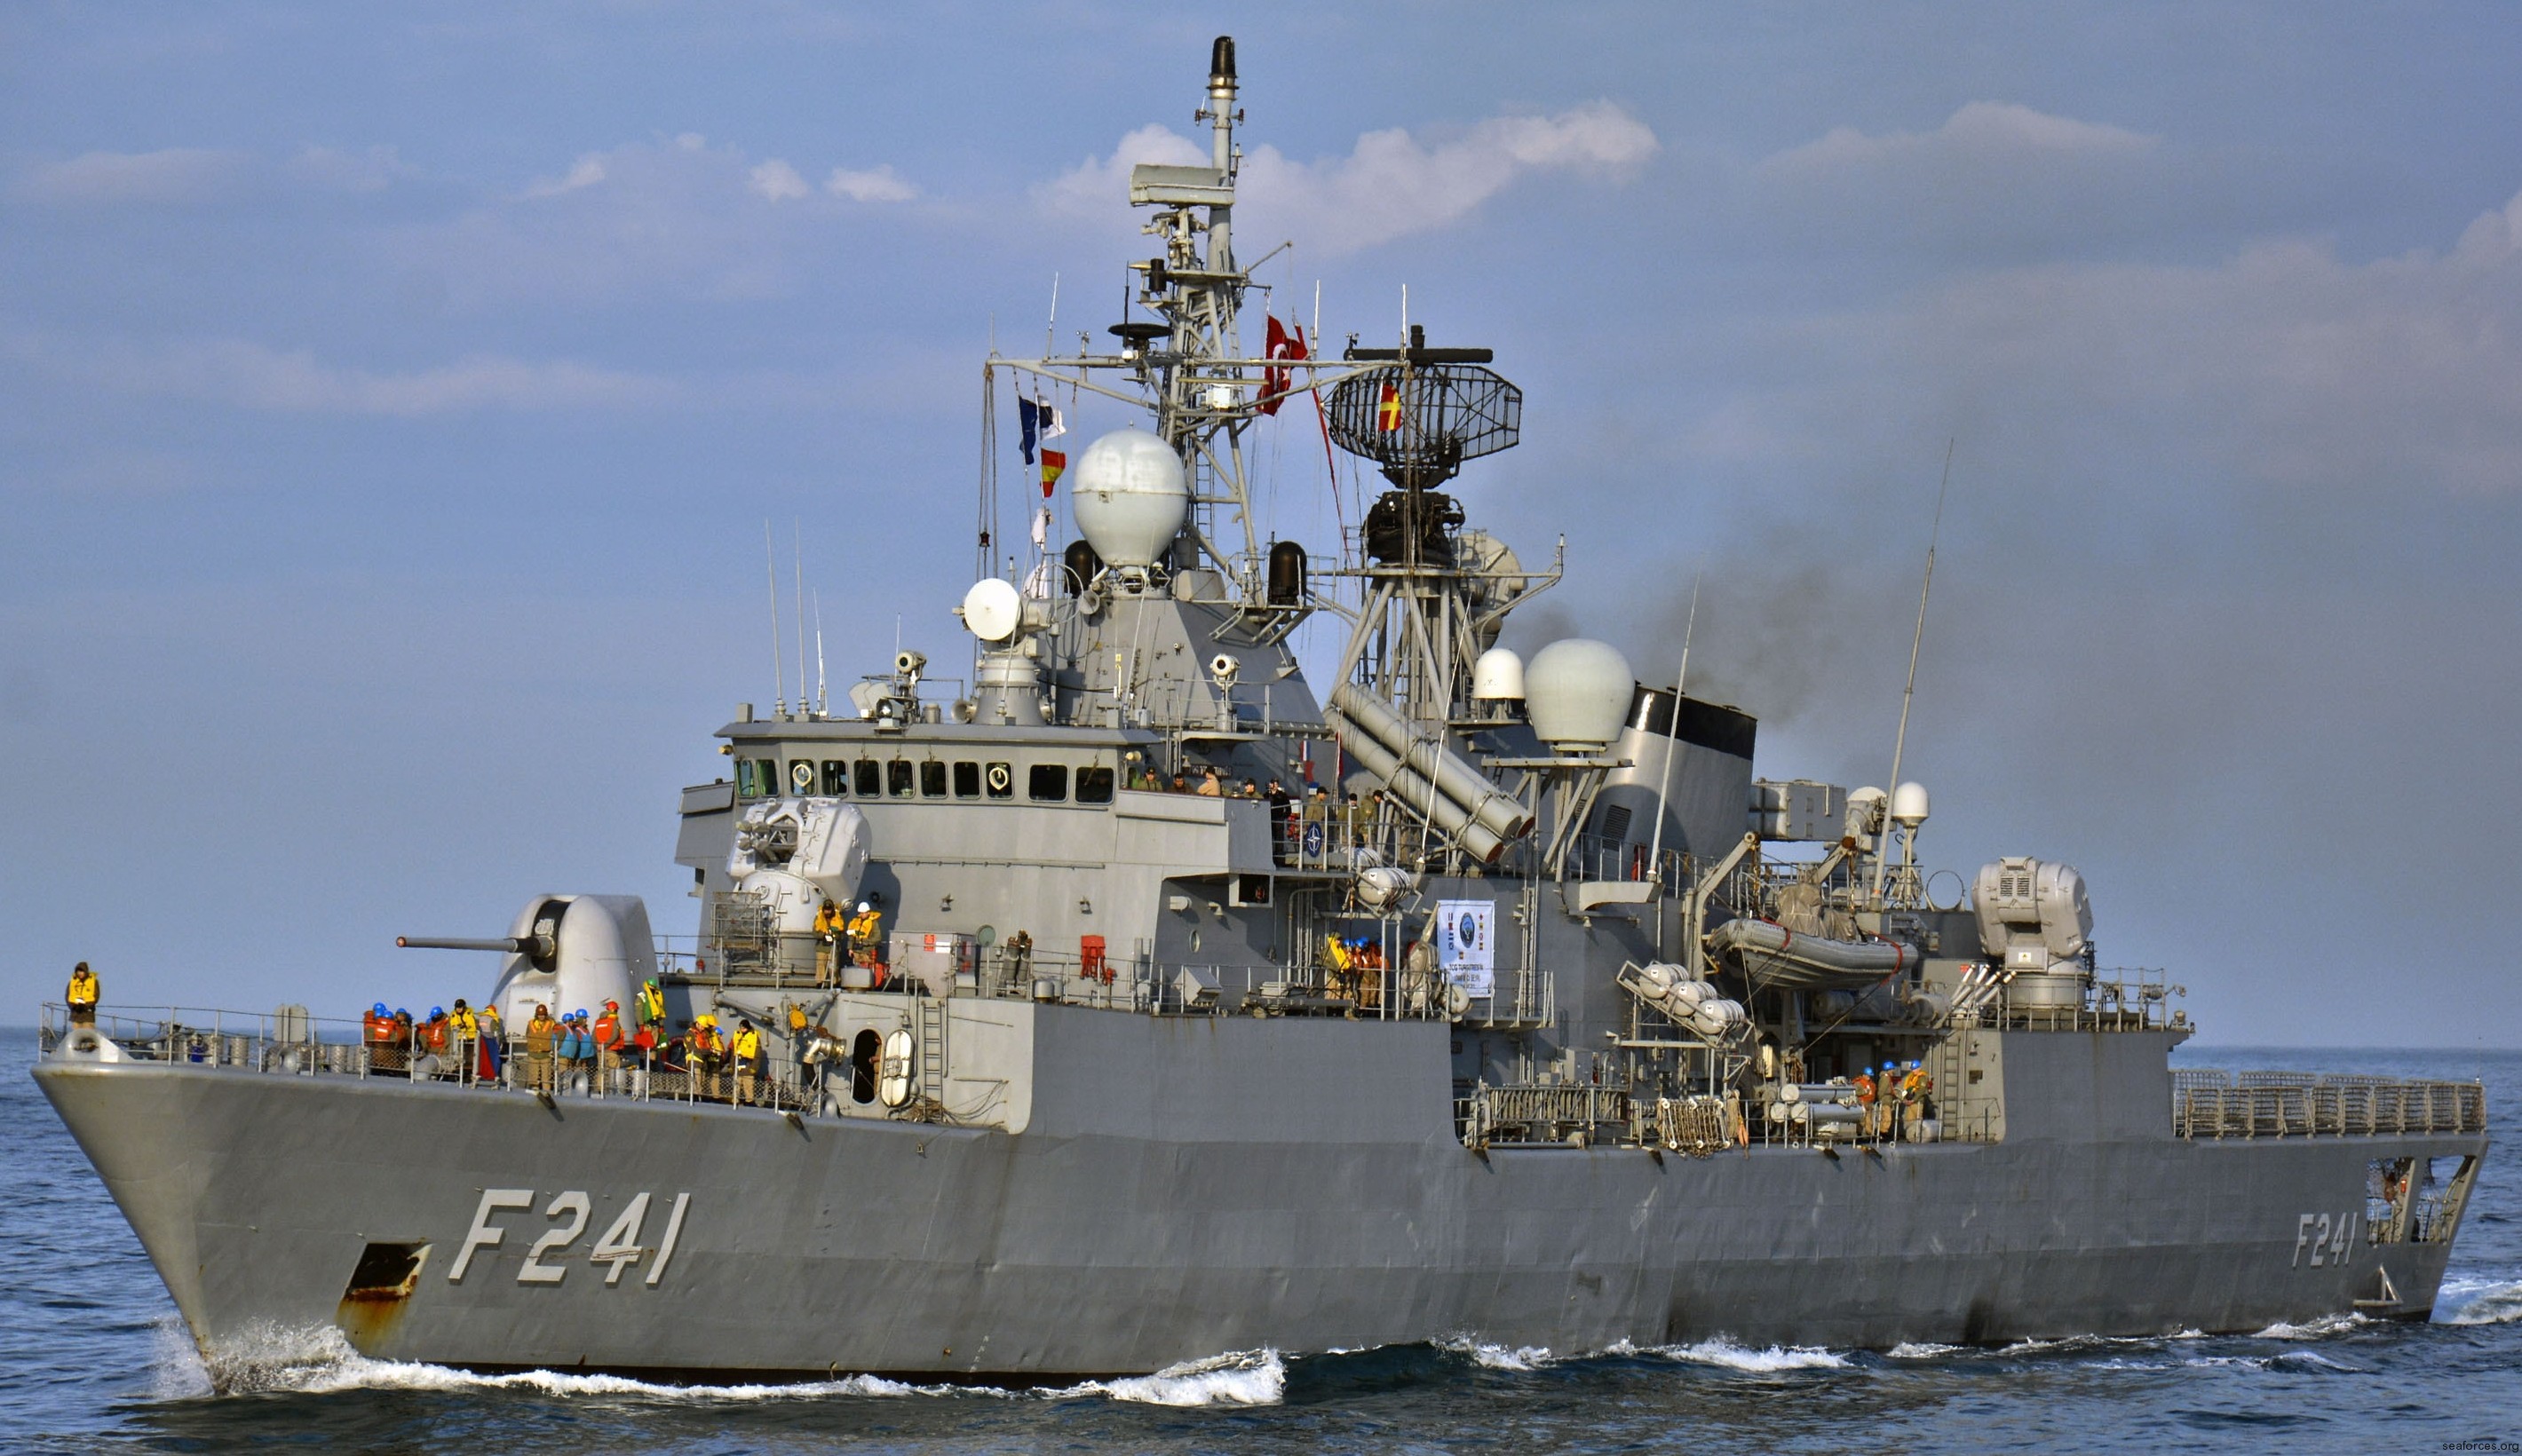 f-241 tcg turgutreis yavuz meko-200tn class frigate turkish navy türk deniz kuvvetleri 04